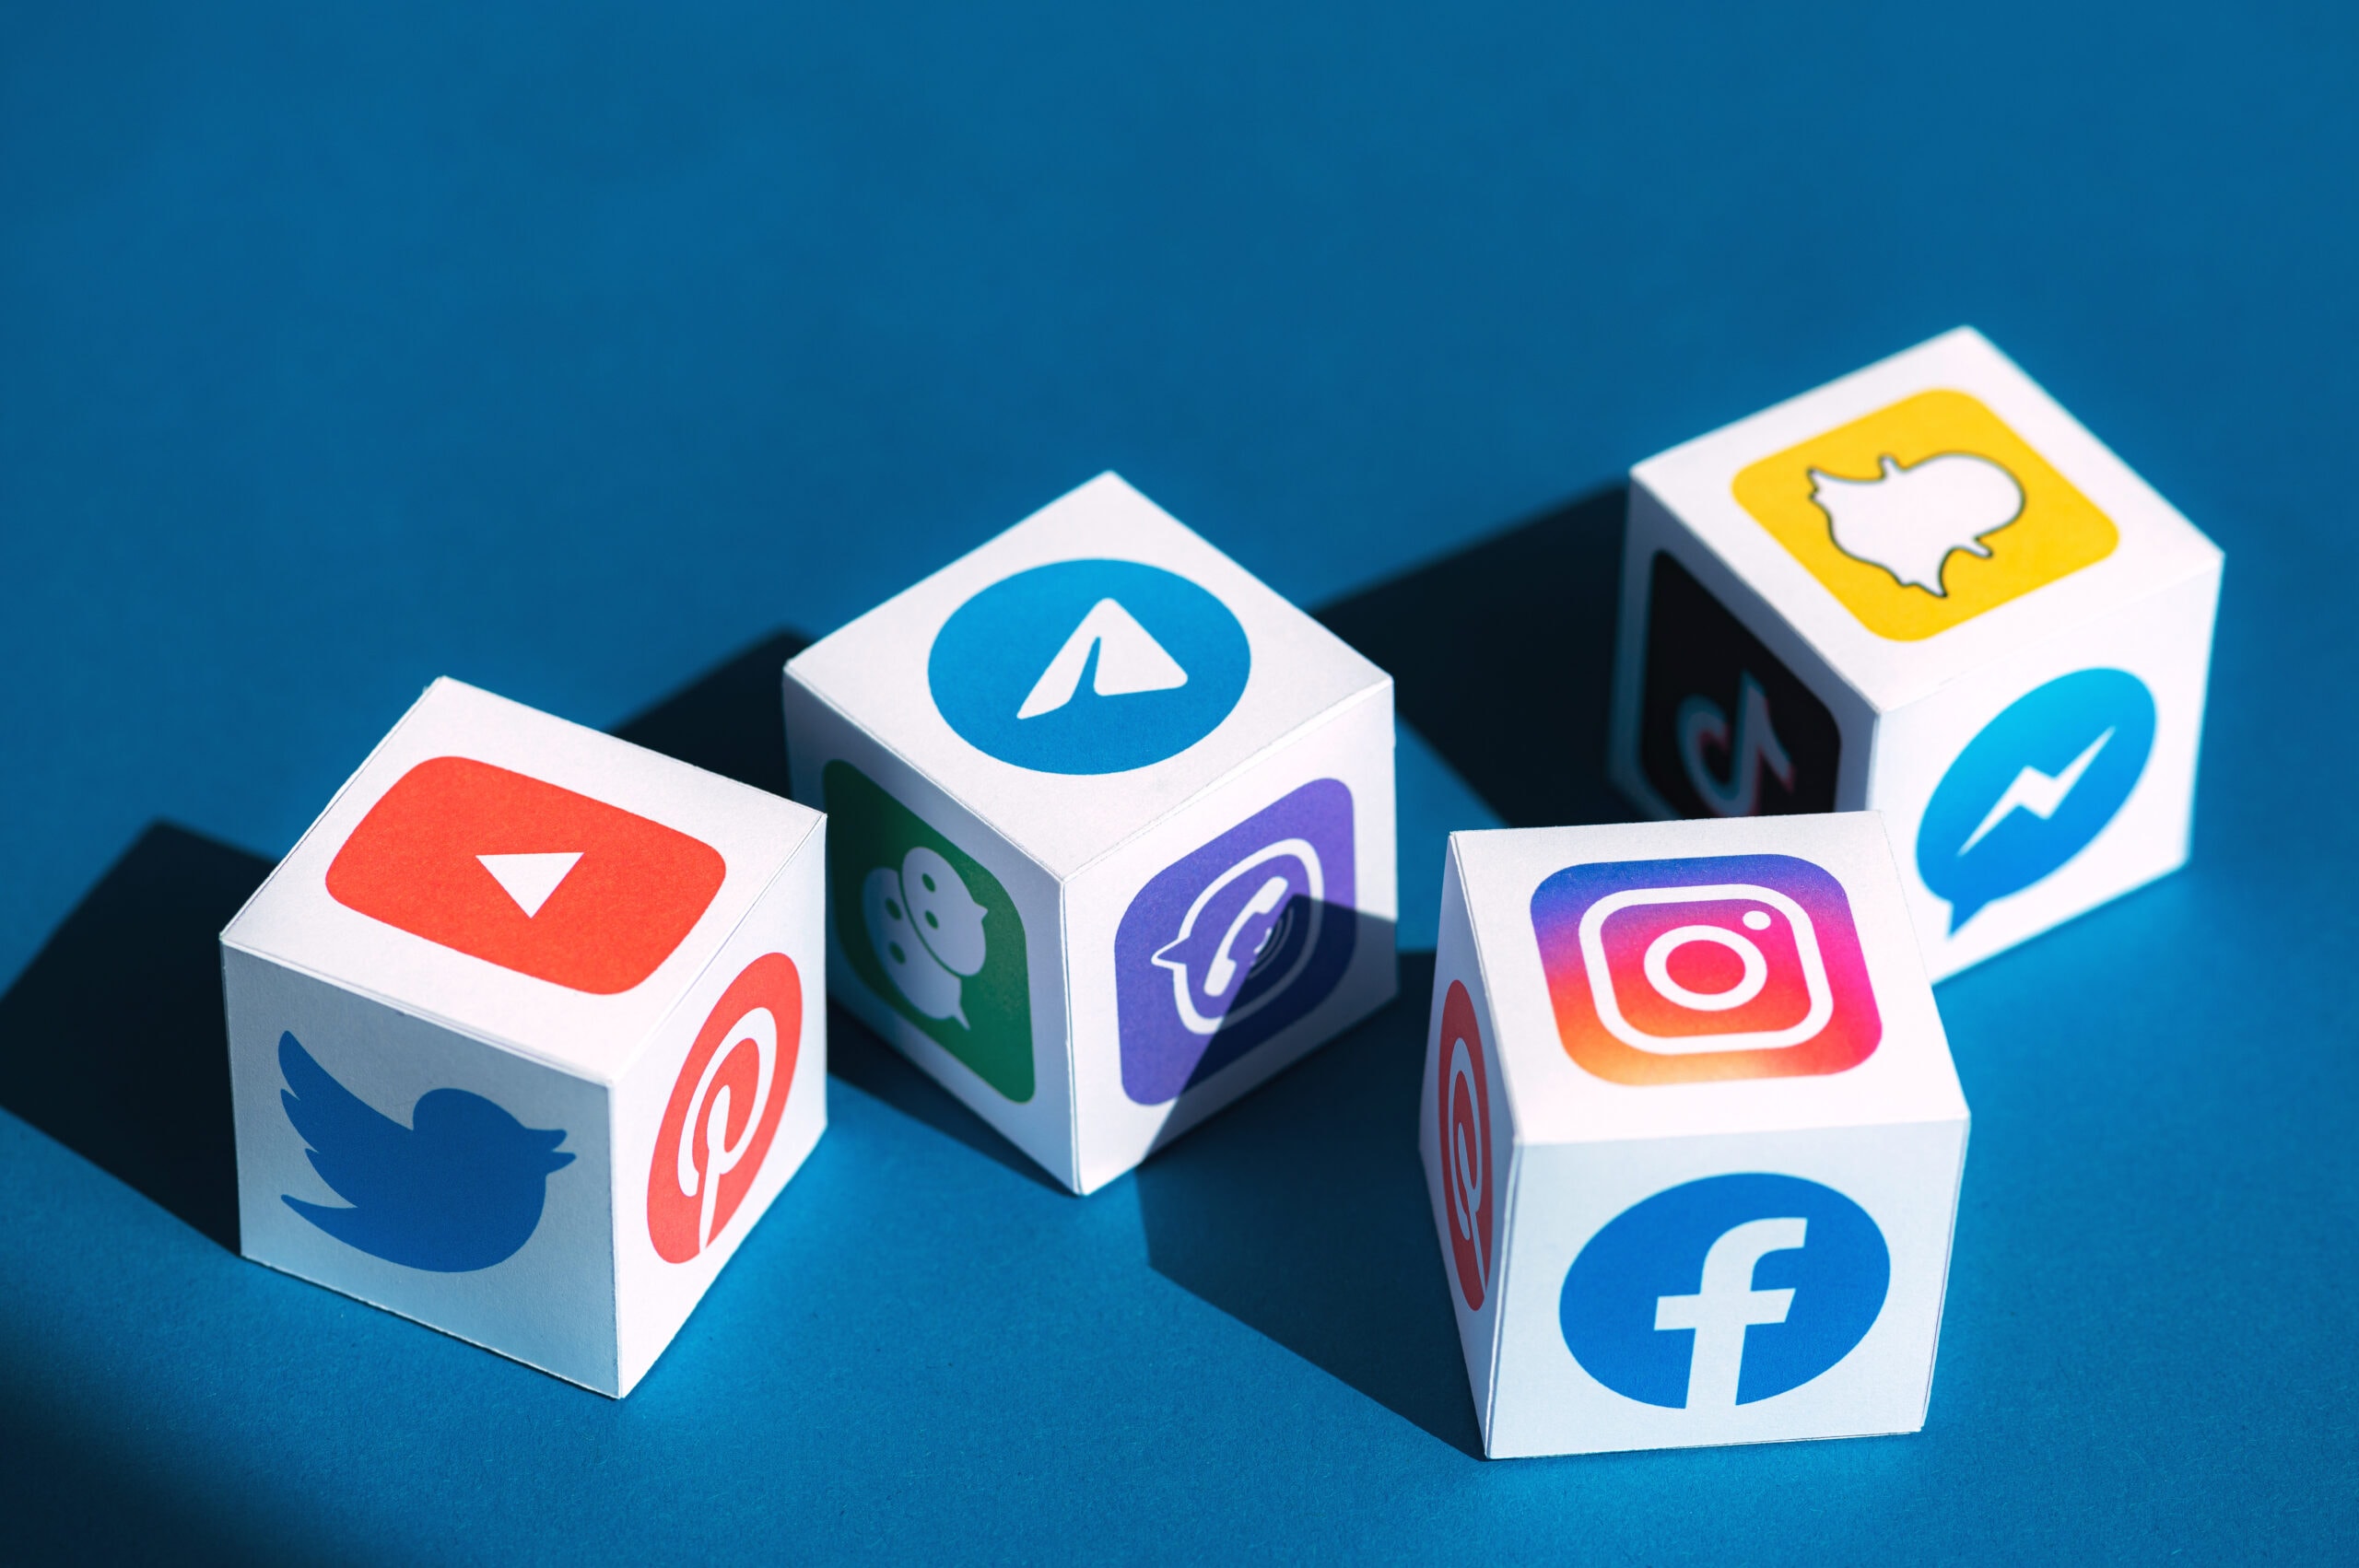 Nicht jede Social Media Plattform passt zu dir und deinem Unternehmen.